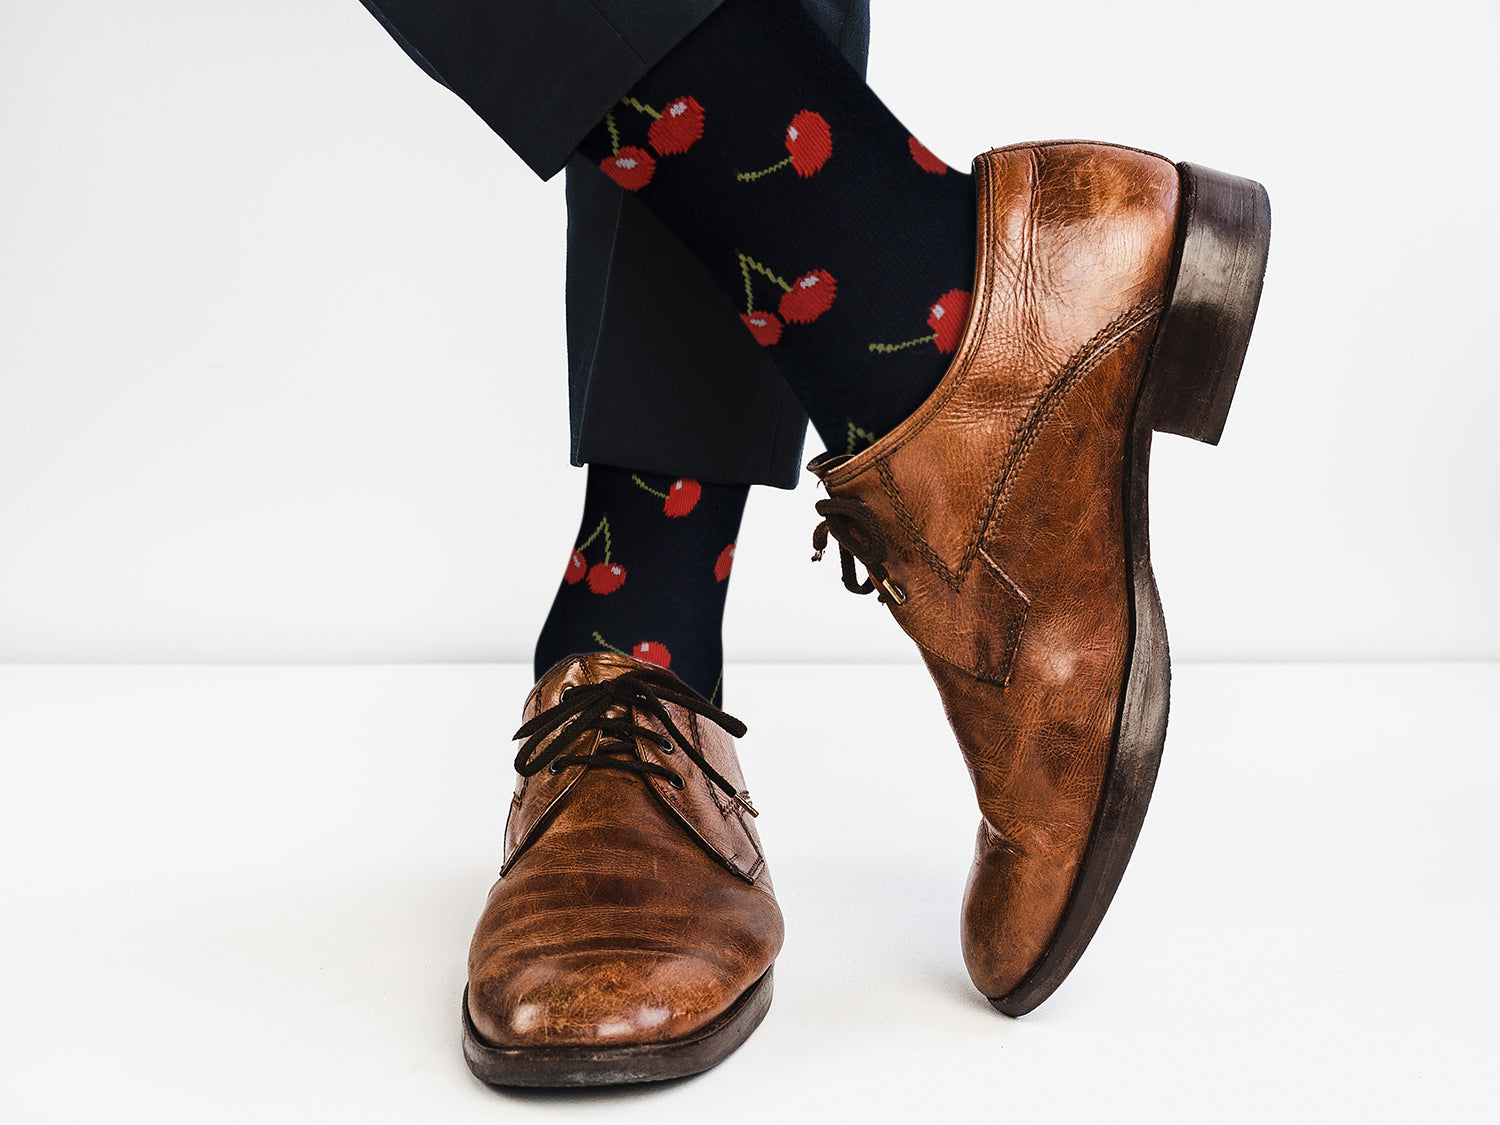 Sick Socks – Cherry – Down on the Farm Socks For Men and Women